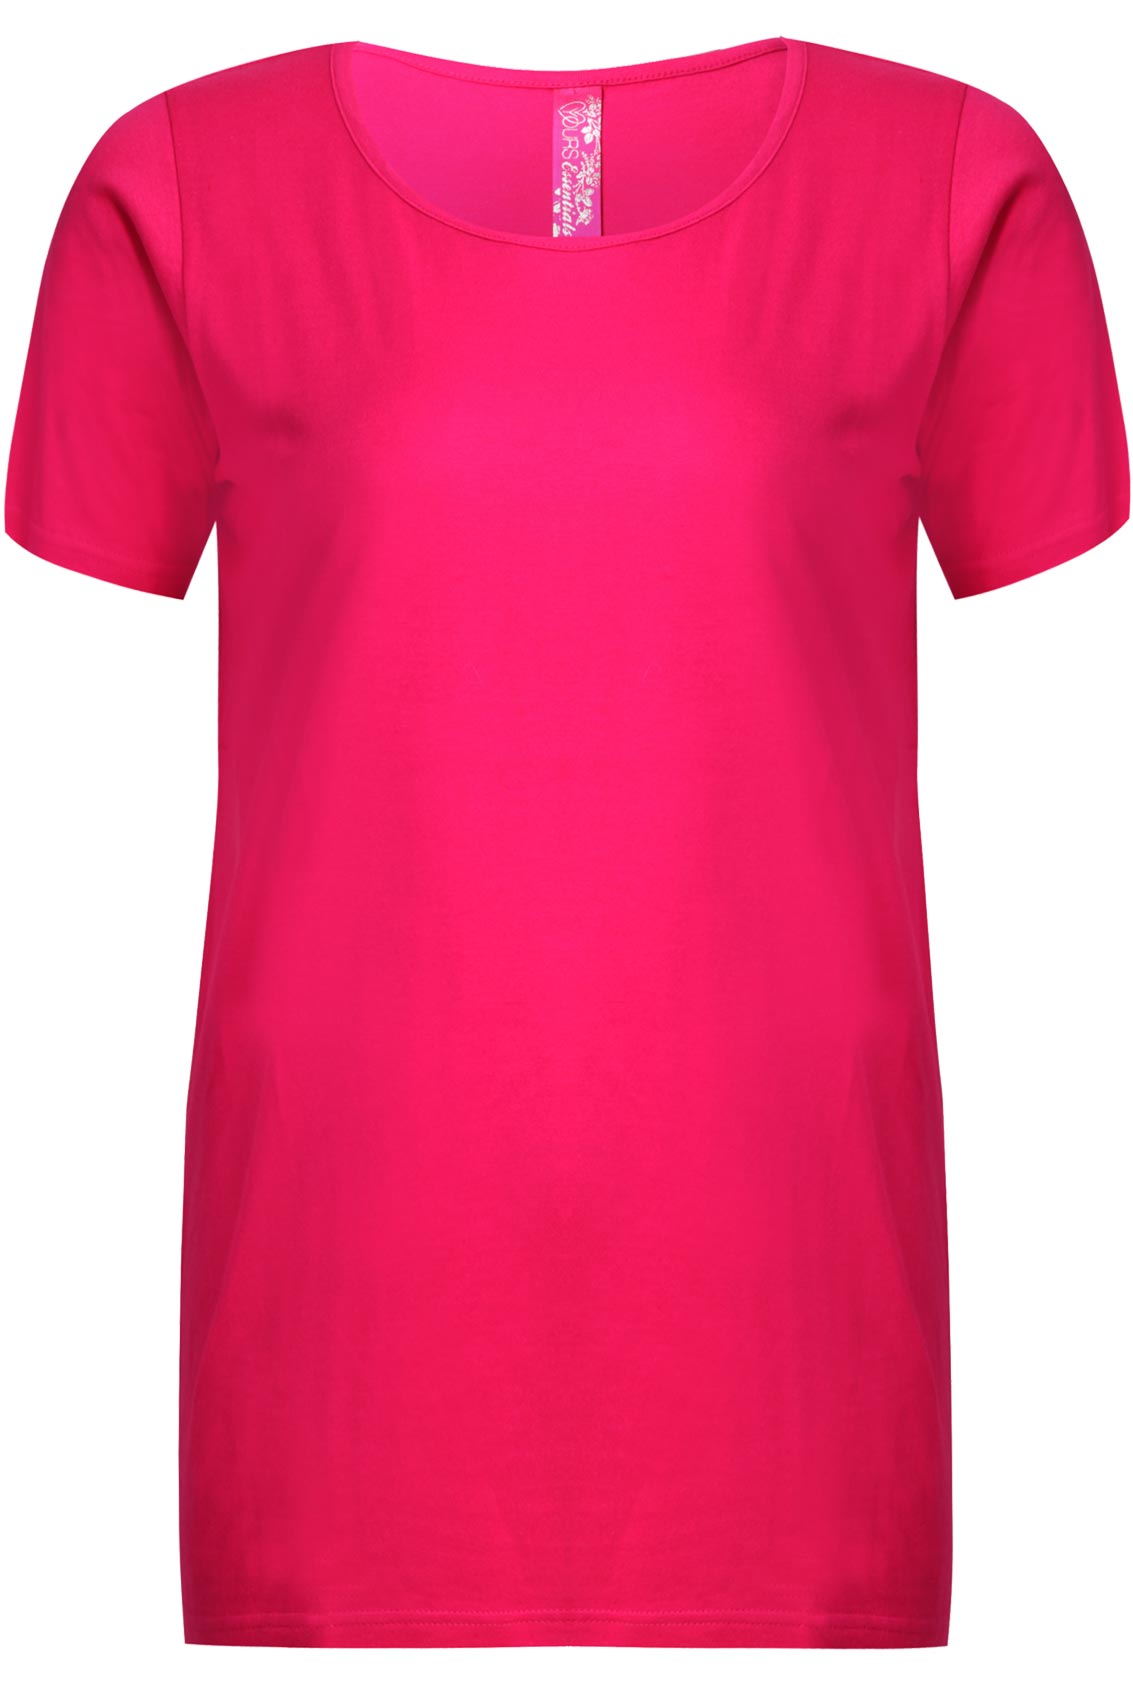 Magenta Short Sleeve Scoop Neck Basic T-shirt plus size 16,18,20,22,24 ...